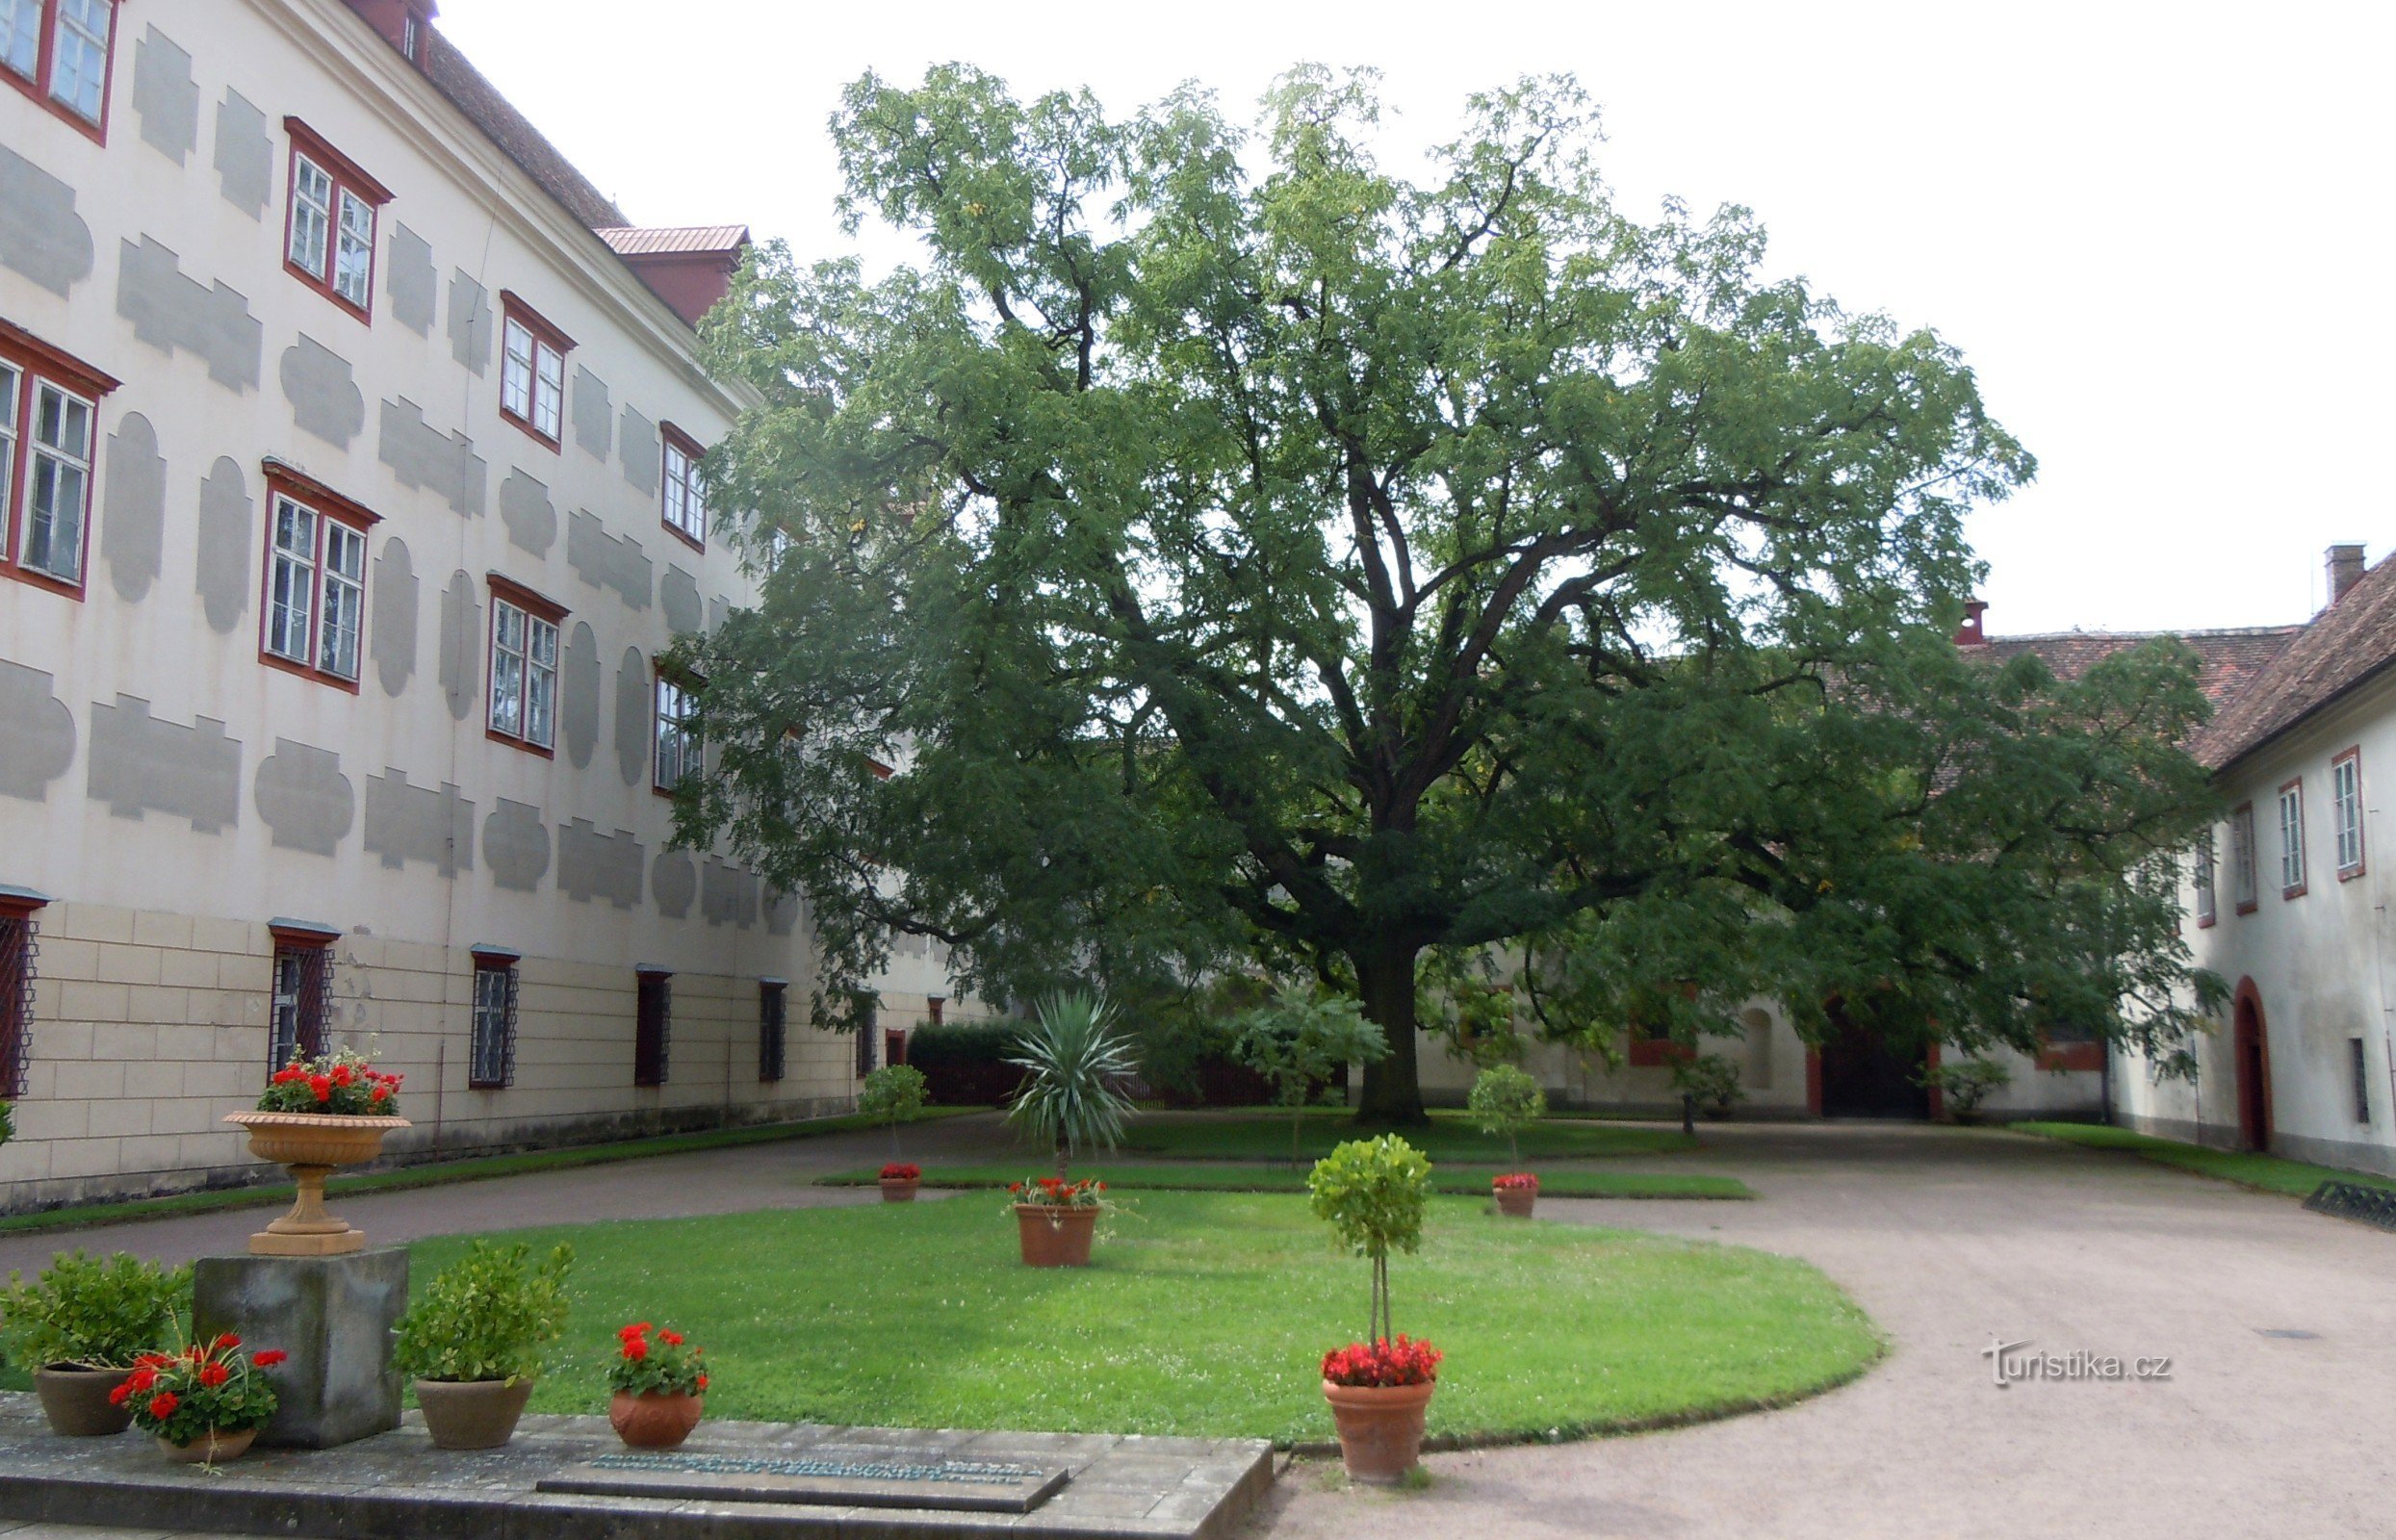 Opočno - een zwarte walnotenboom op de binnenplaats van het kasteel